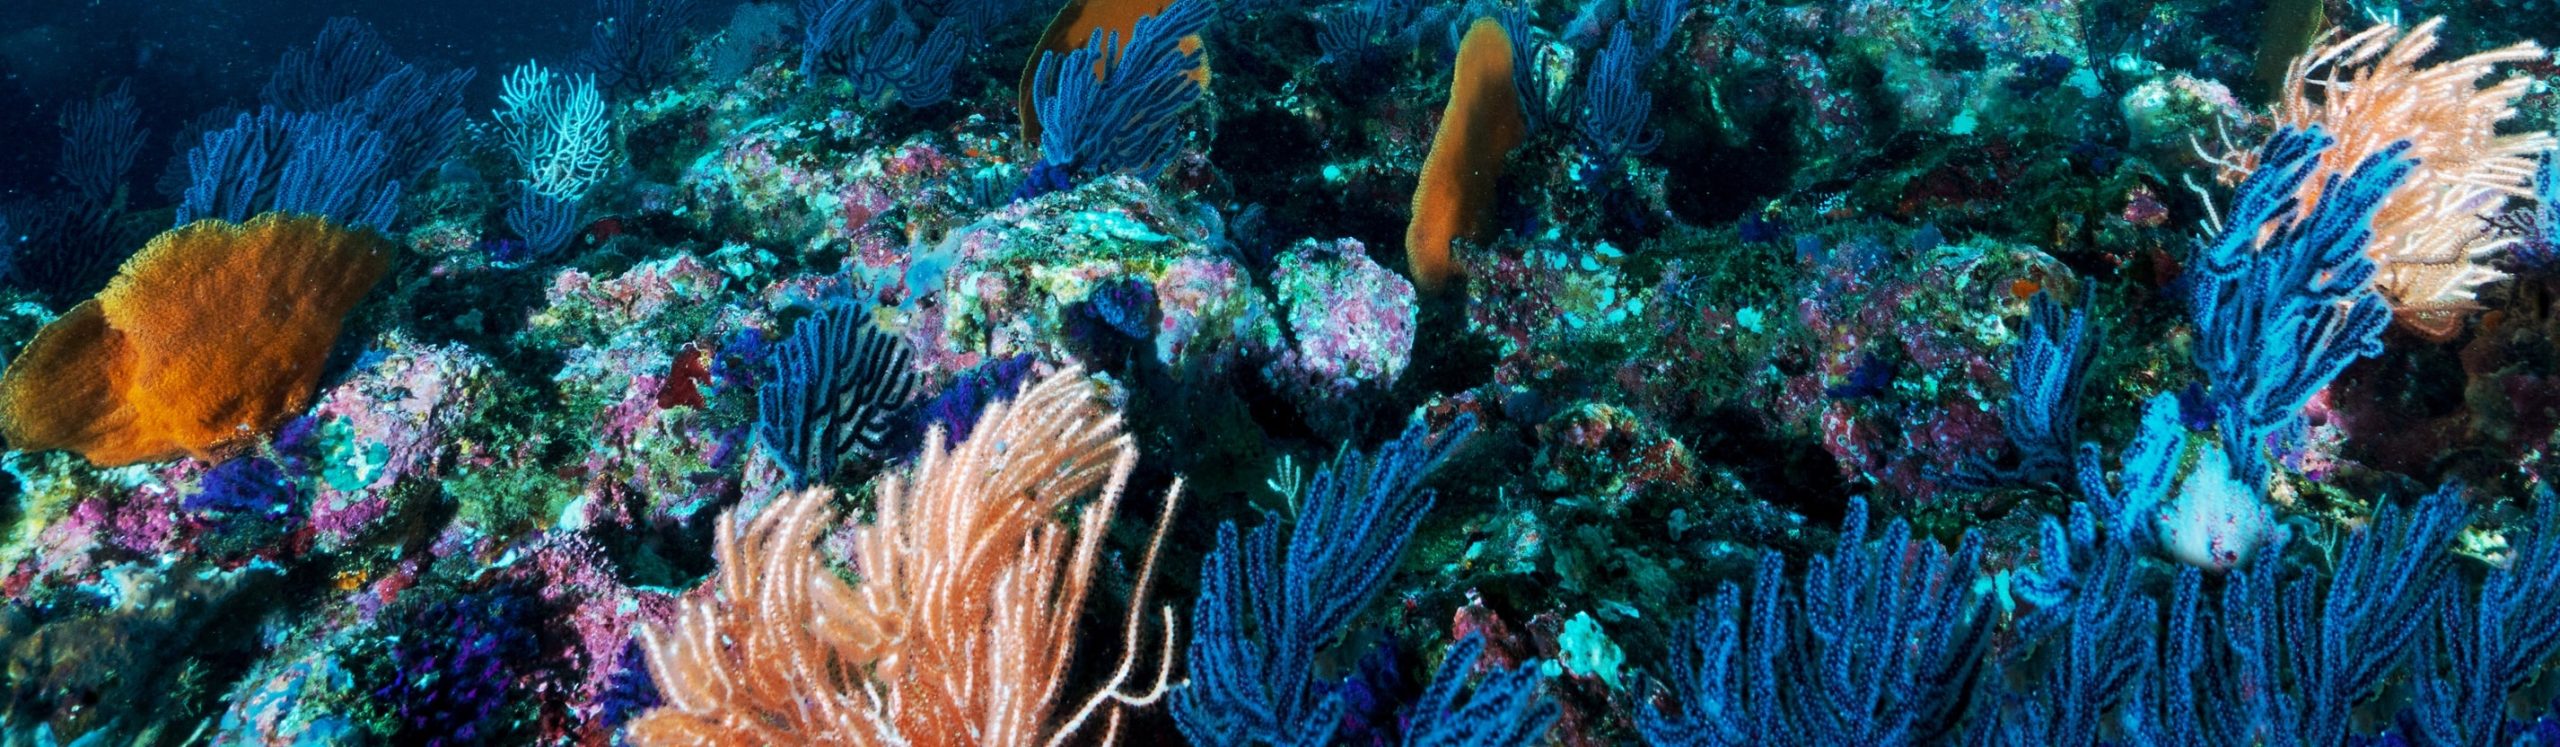 sea fish underwater drone